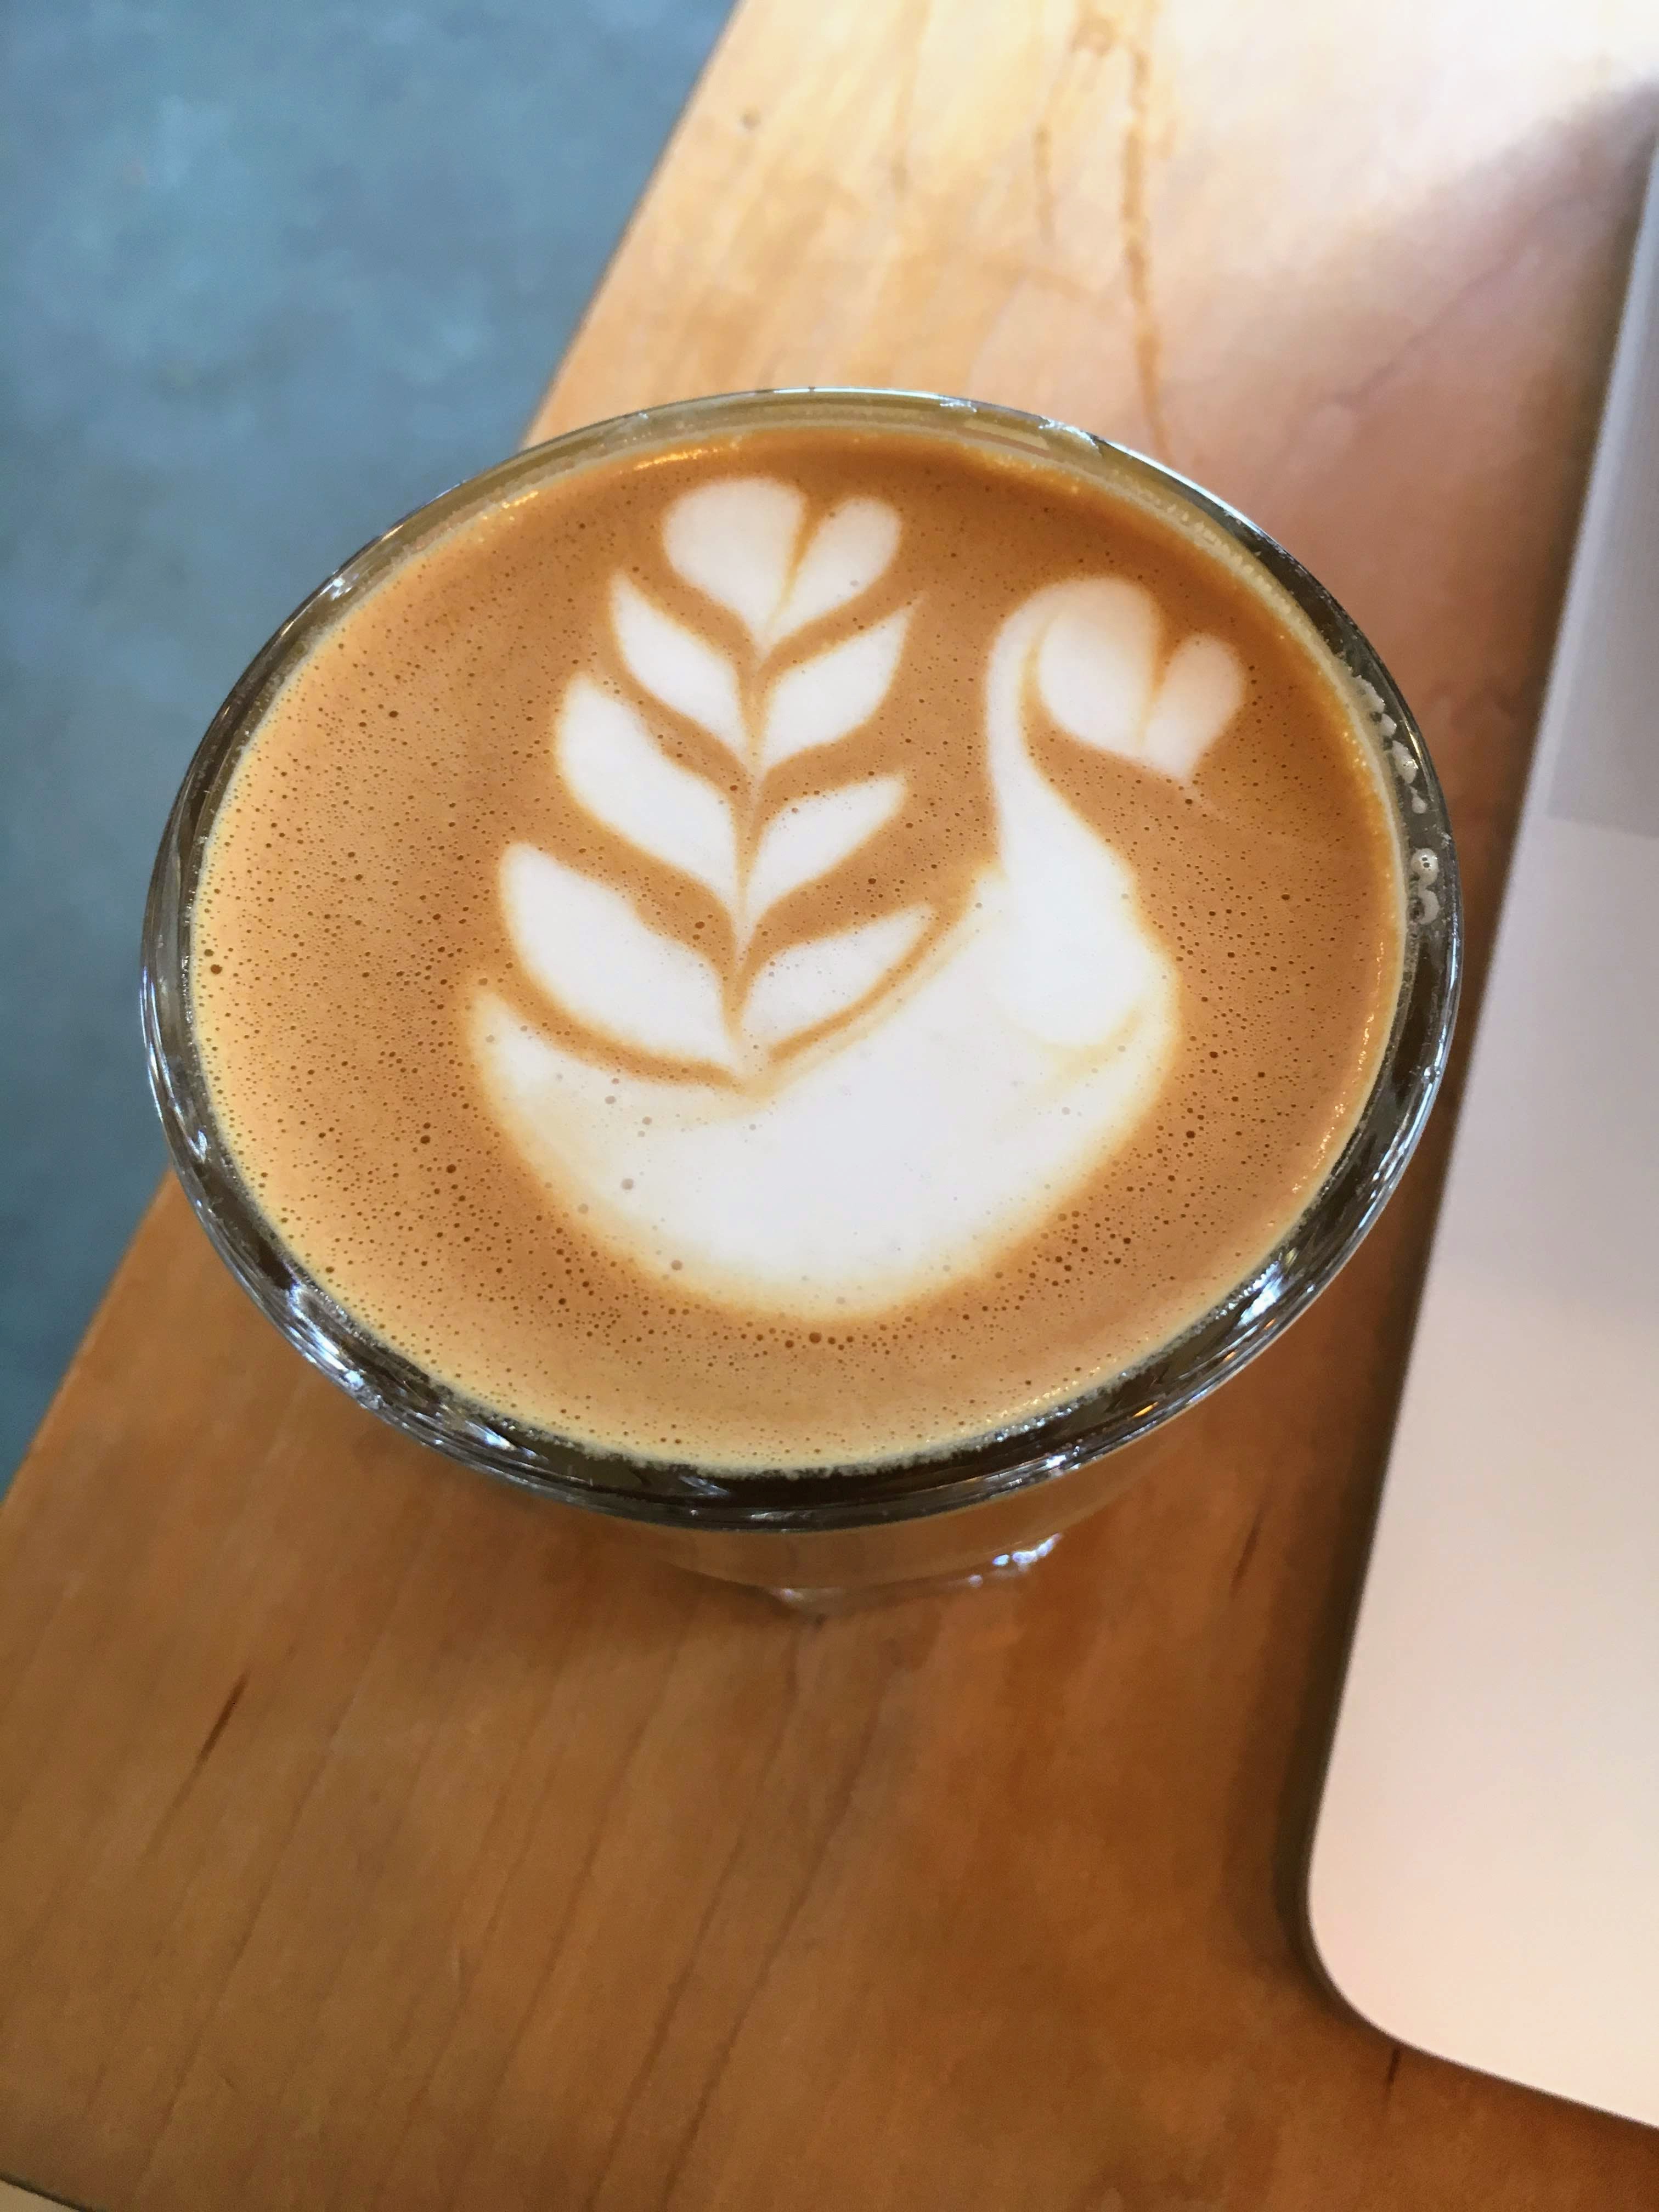 Damn that latte art